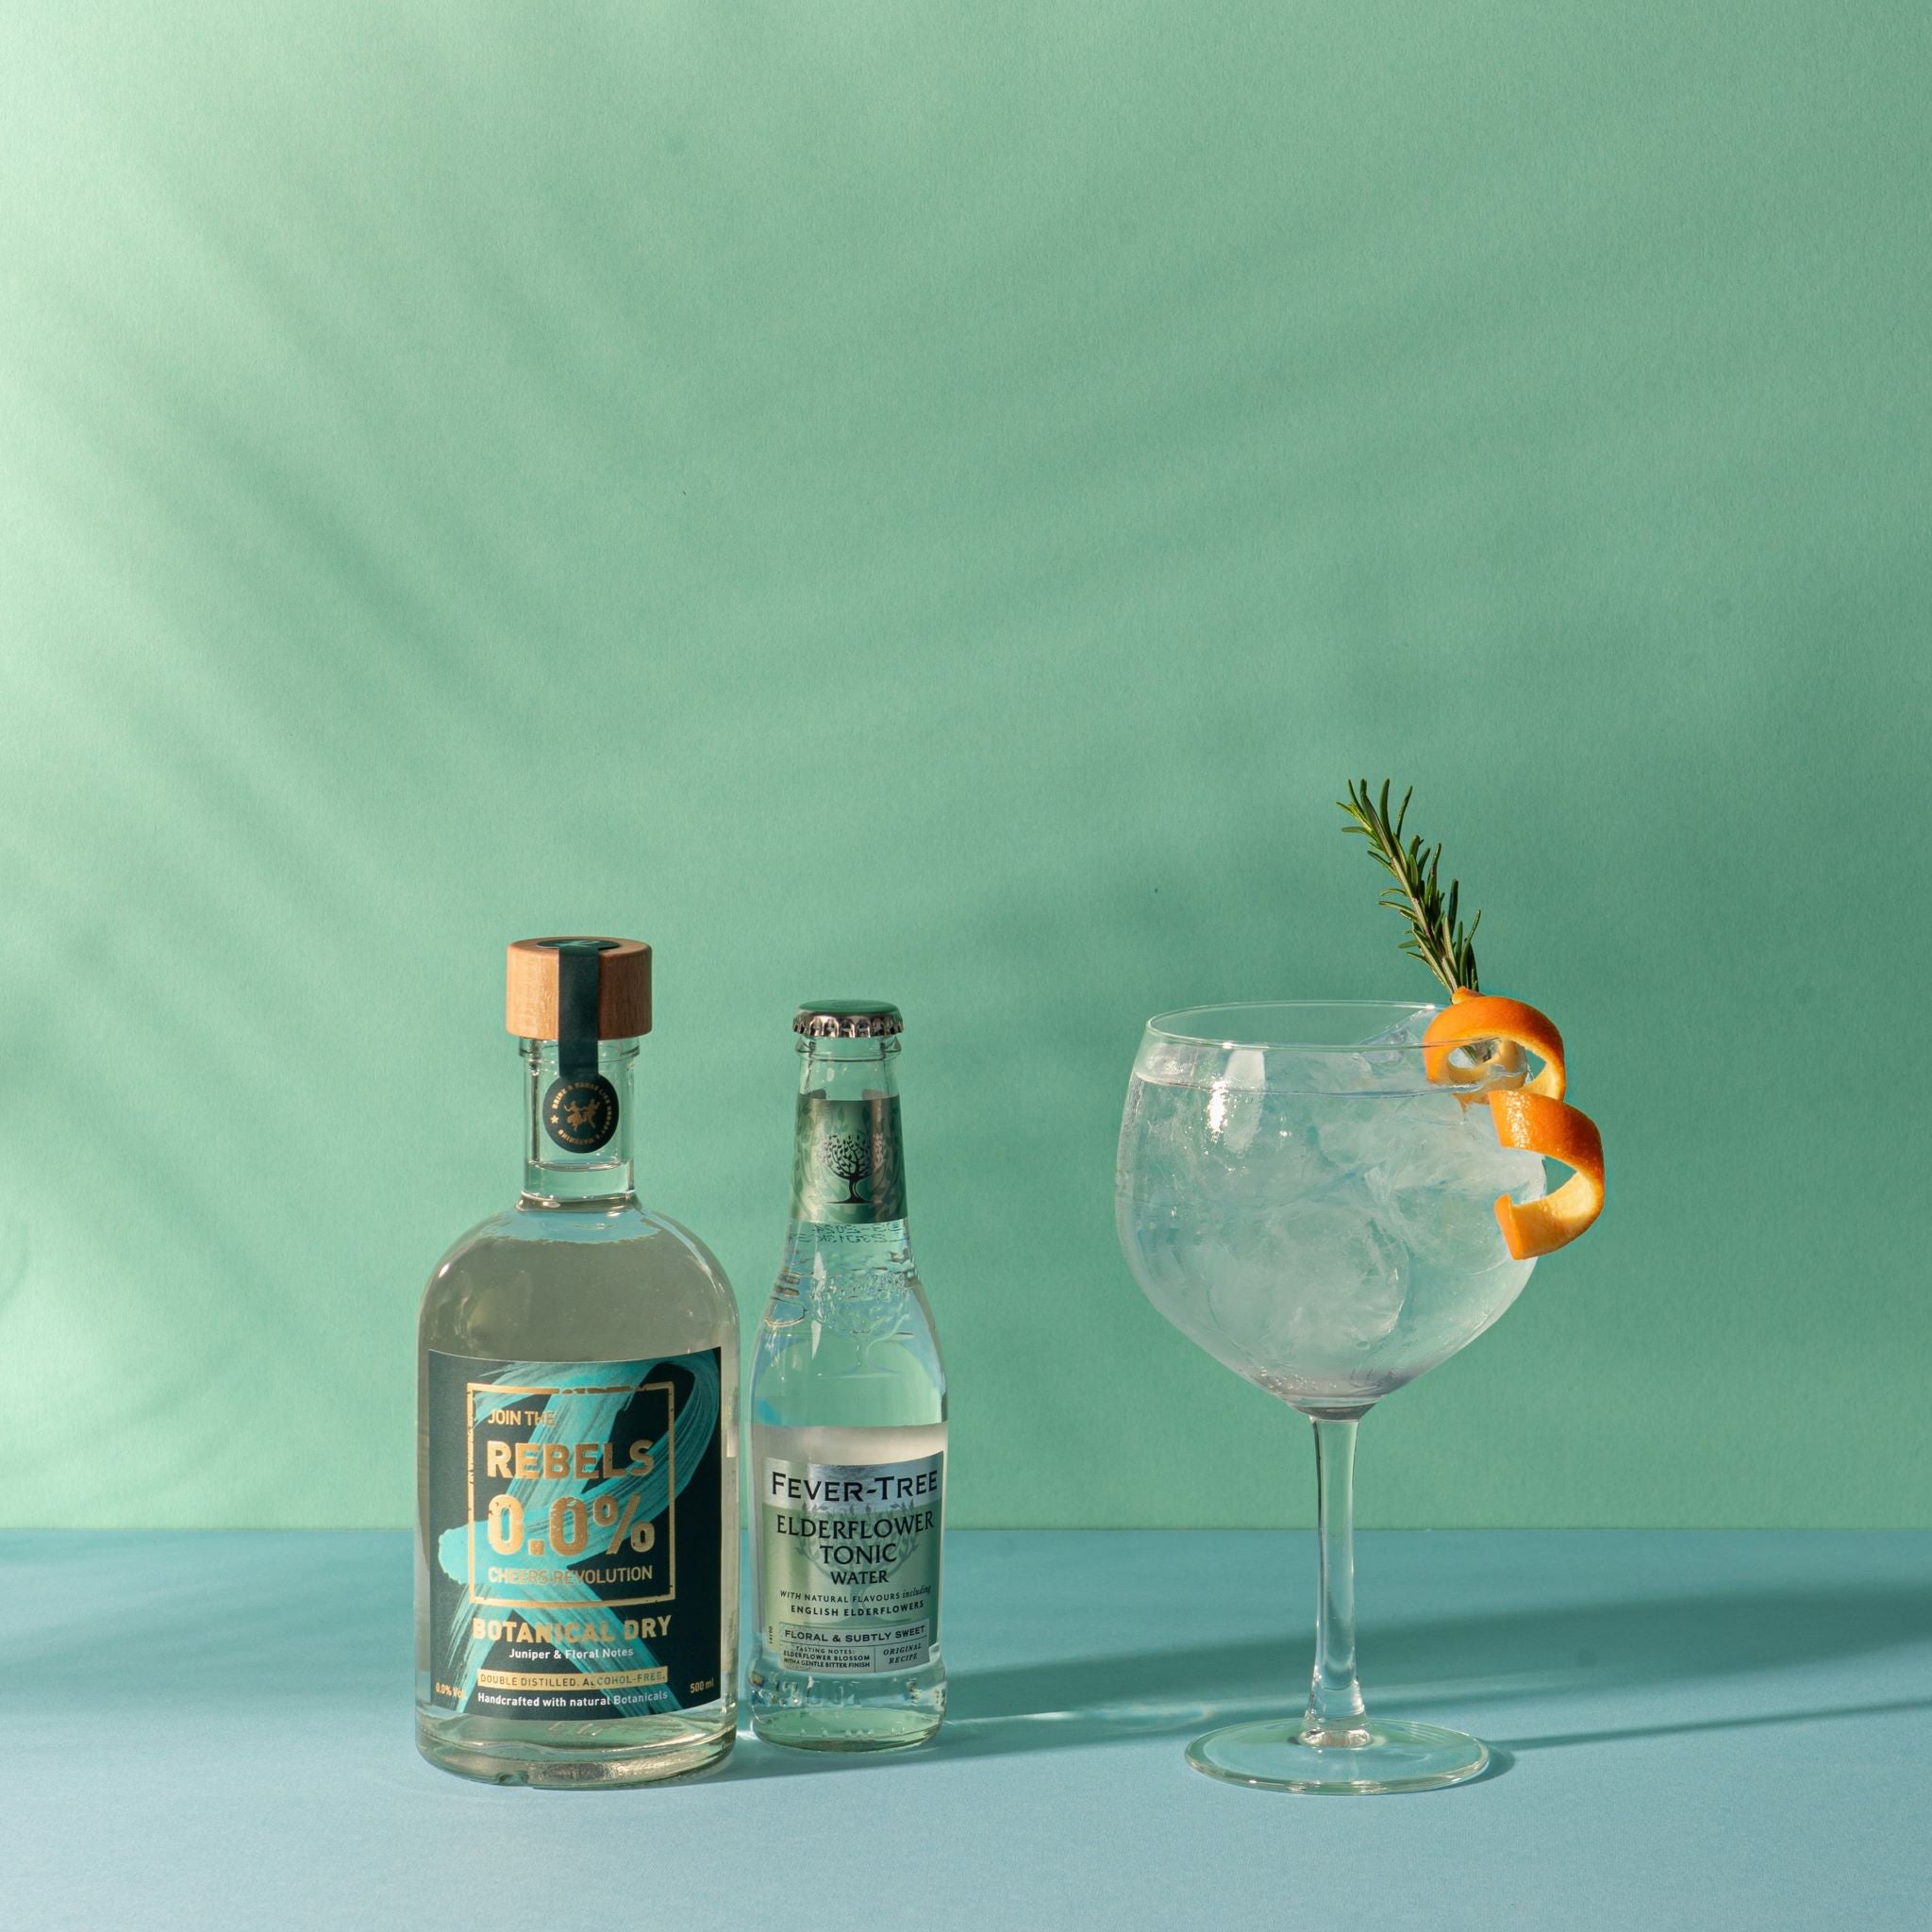 De alcoholvrije cocktail van Rebels0.0%, een Gin & Tonic.